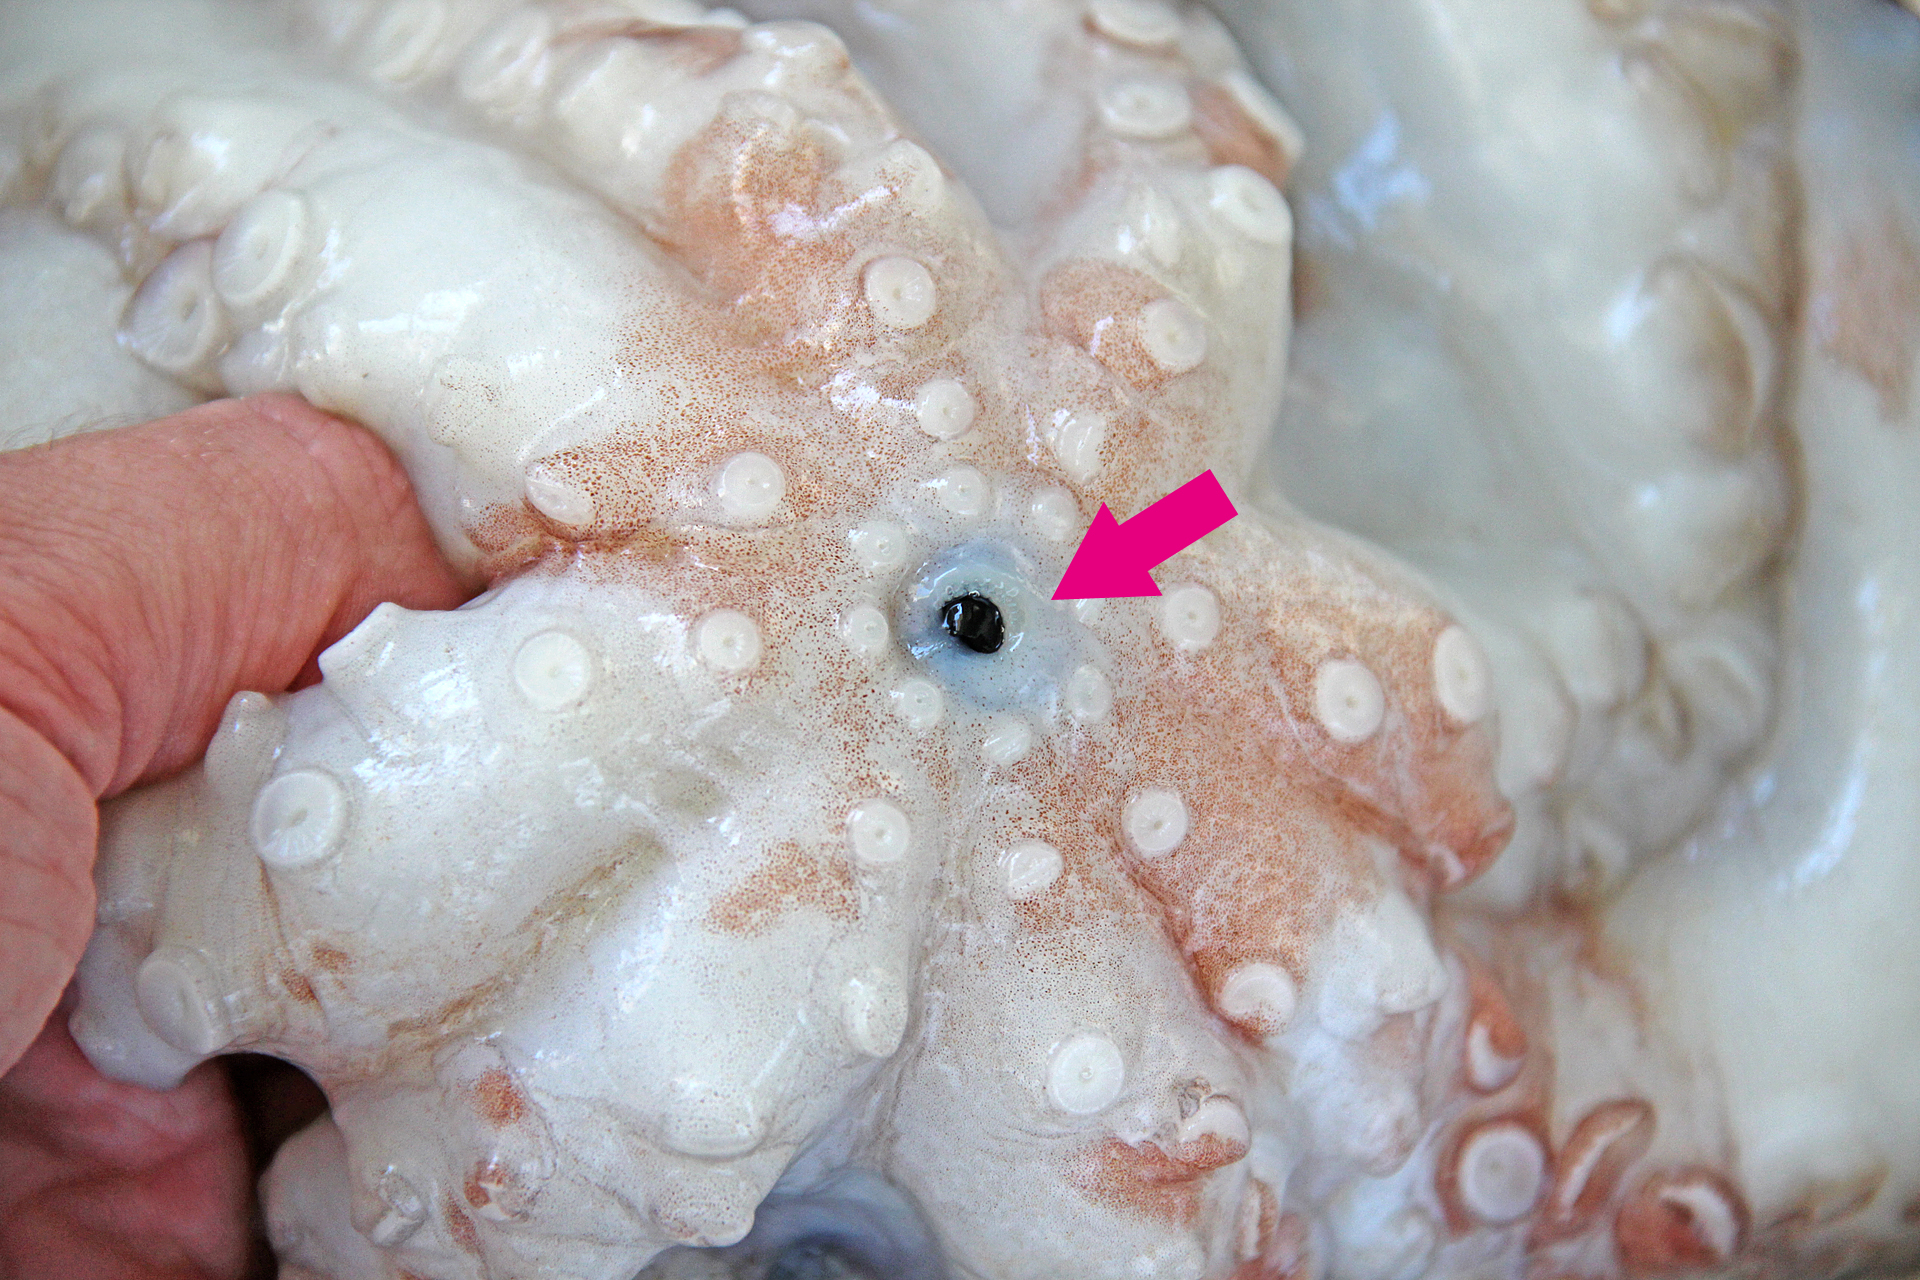 Kraken essen: die Mundwerkzeuge entfernen